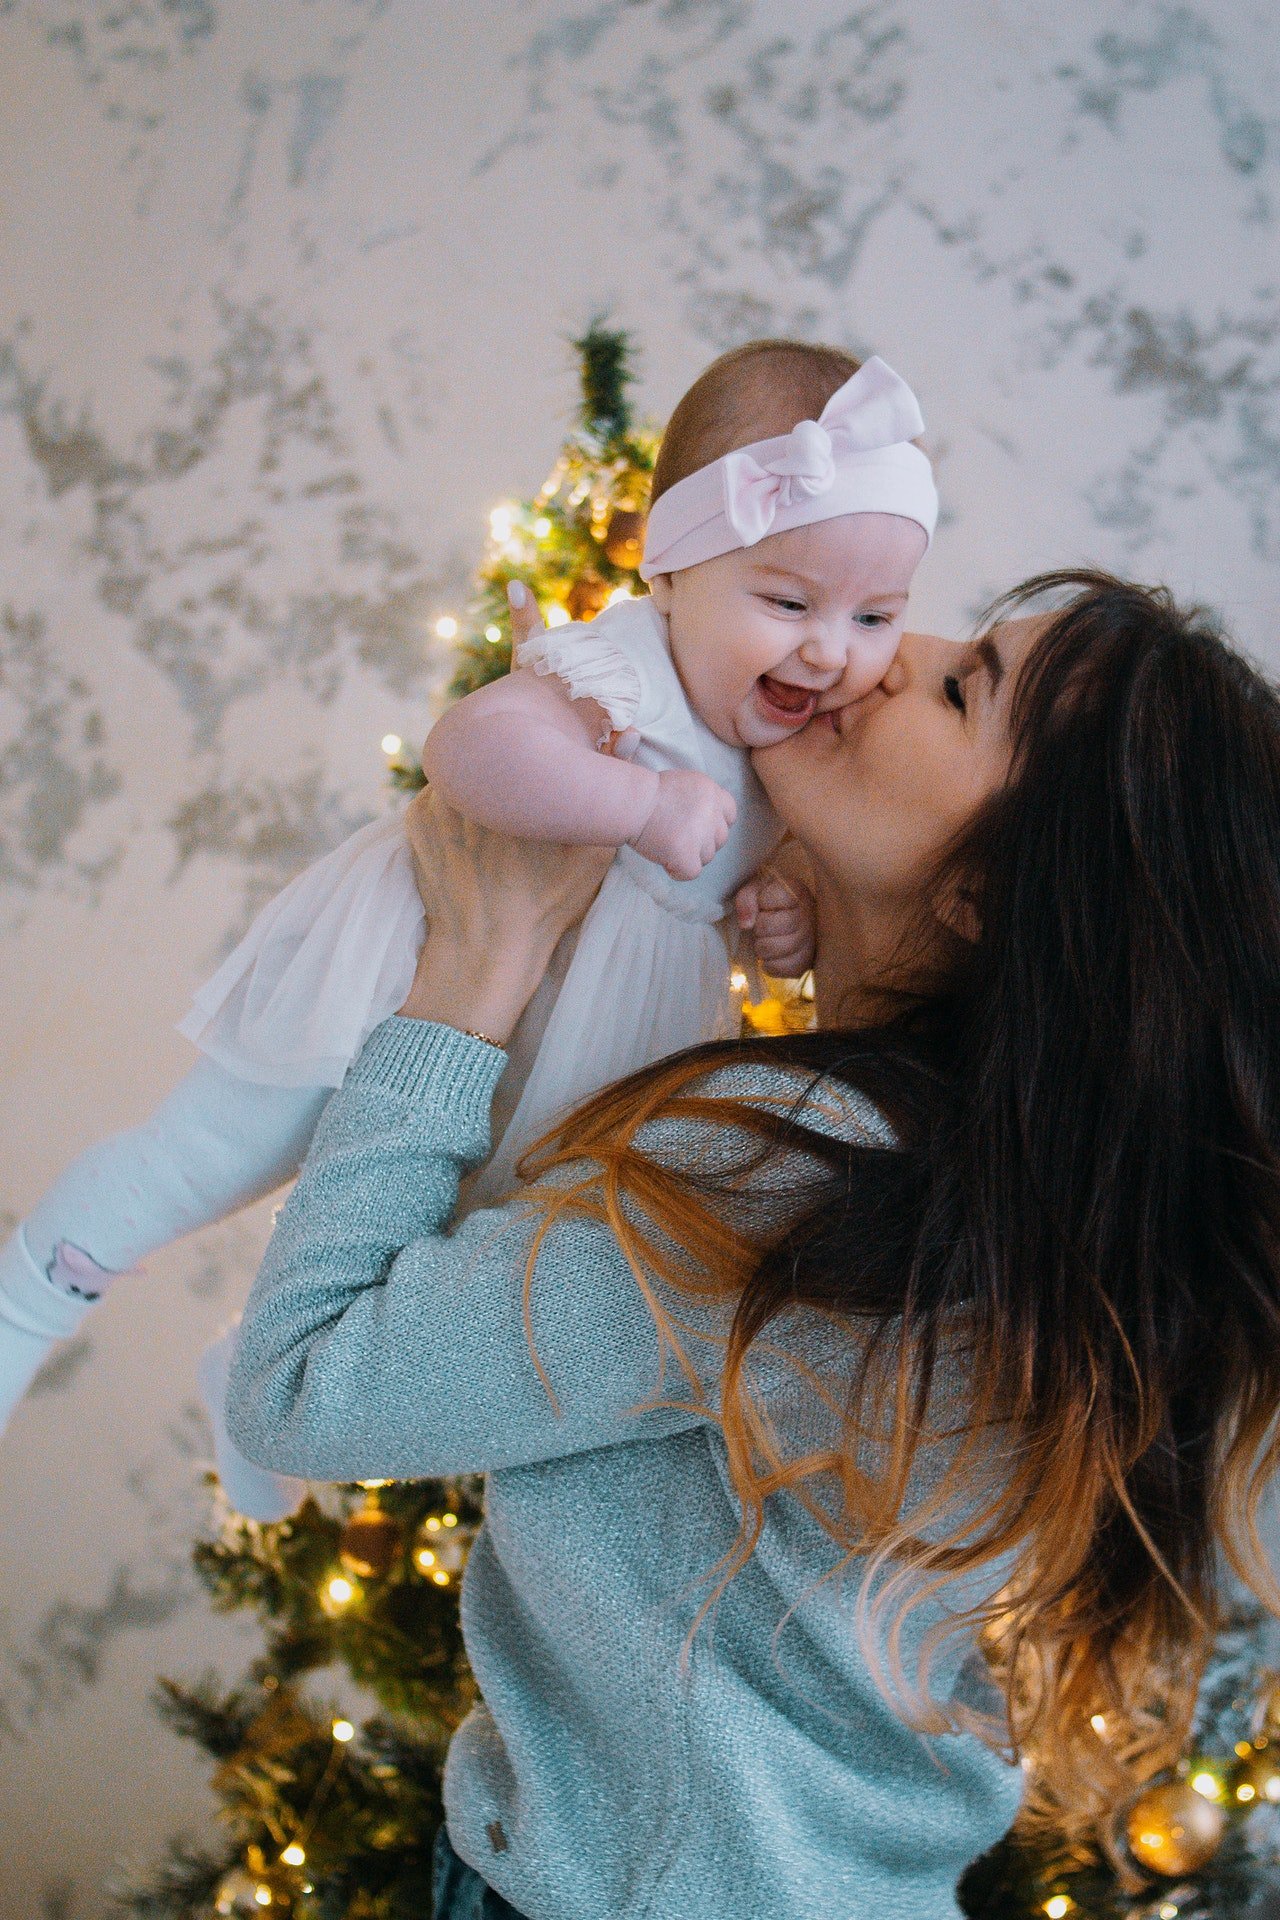 Christina est restée avec Camila, qui a été la meilleure tante du monde | Source : Pexels